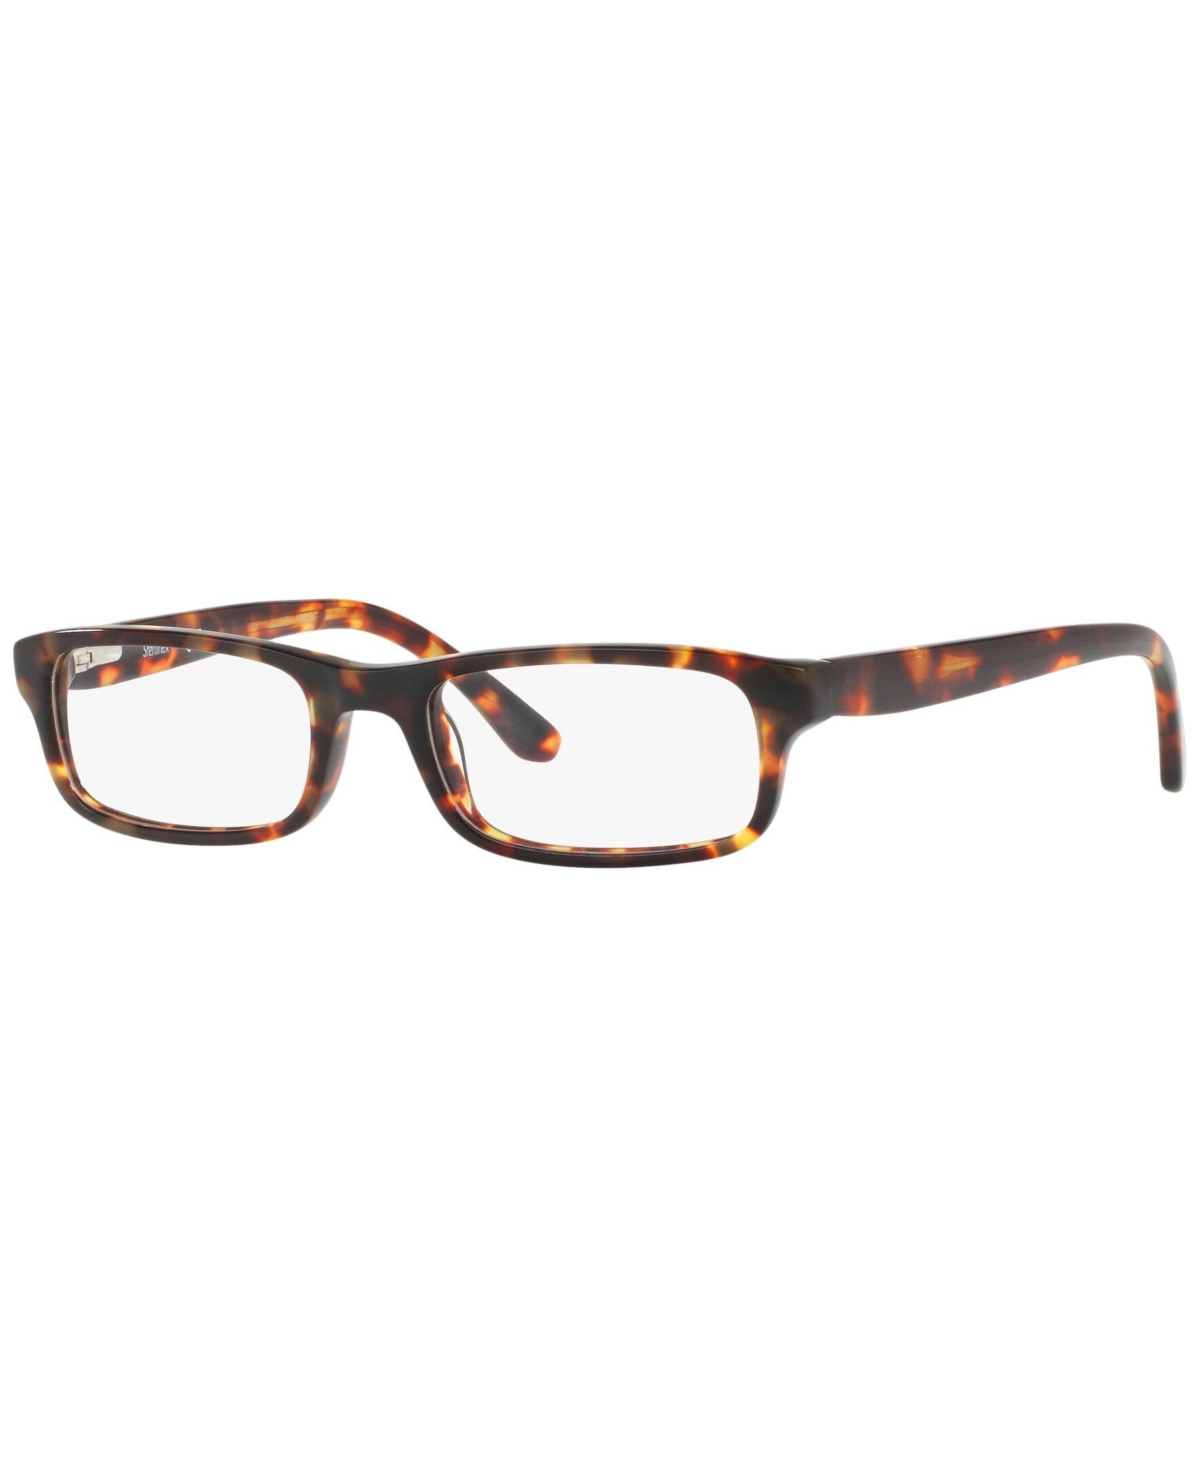 SF1846 Men's Rectangle Eyeglasses - Tortoise